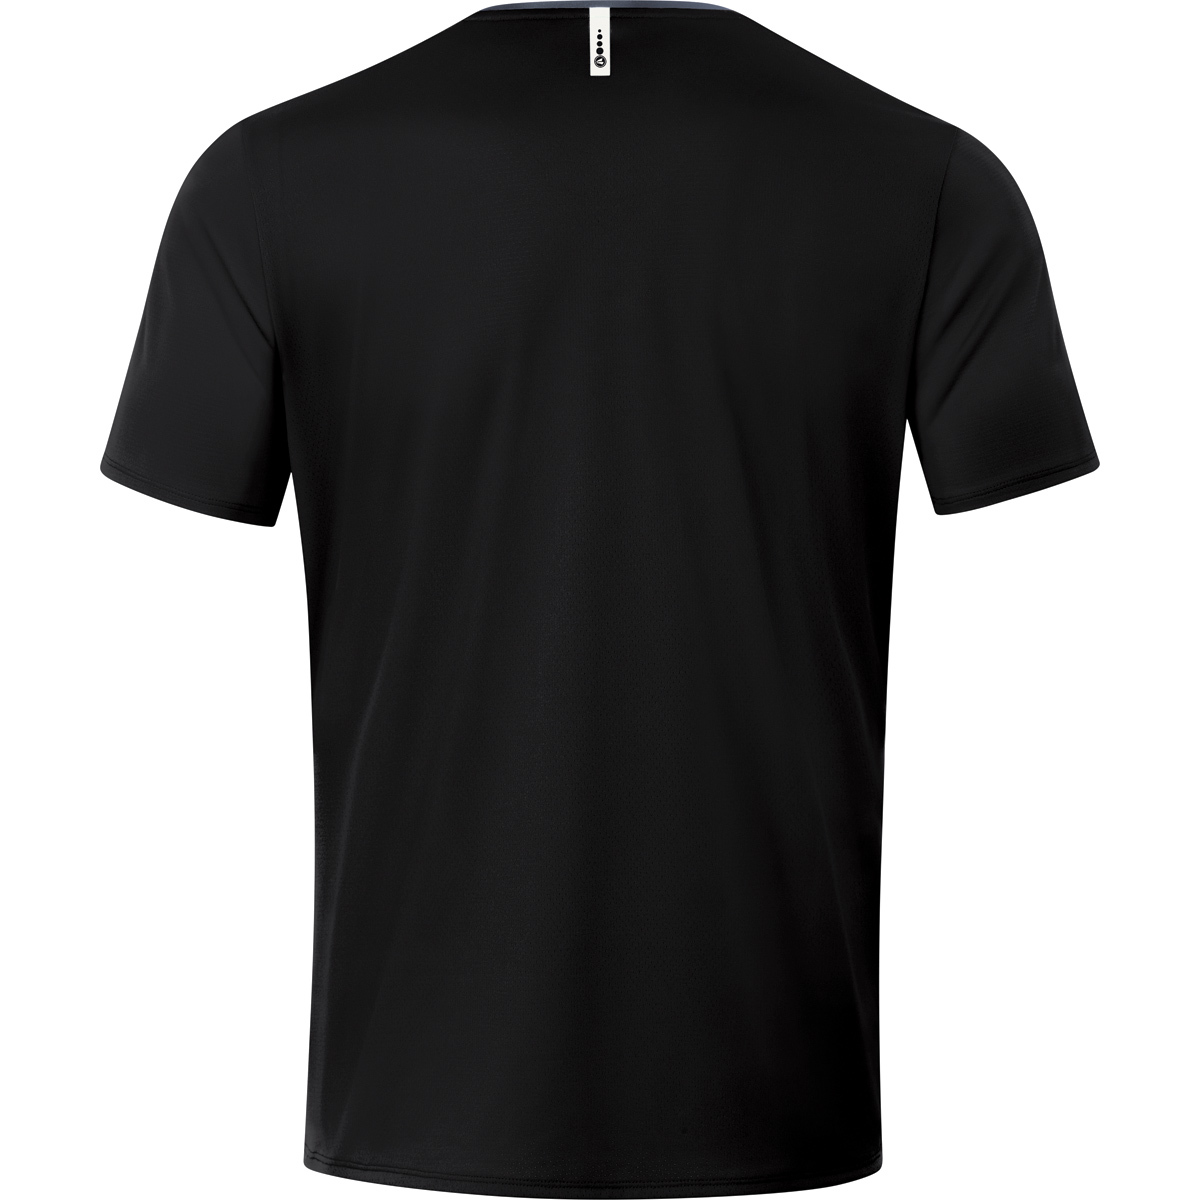 JAKO T-Shirt Champ XL, schwarz/anthrazit, 6120 Herren, Gr. 2.0